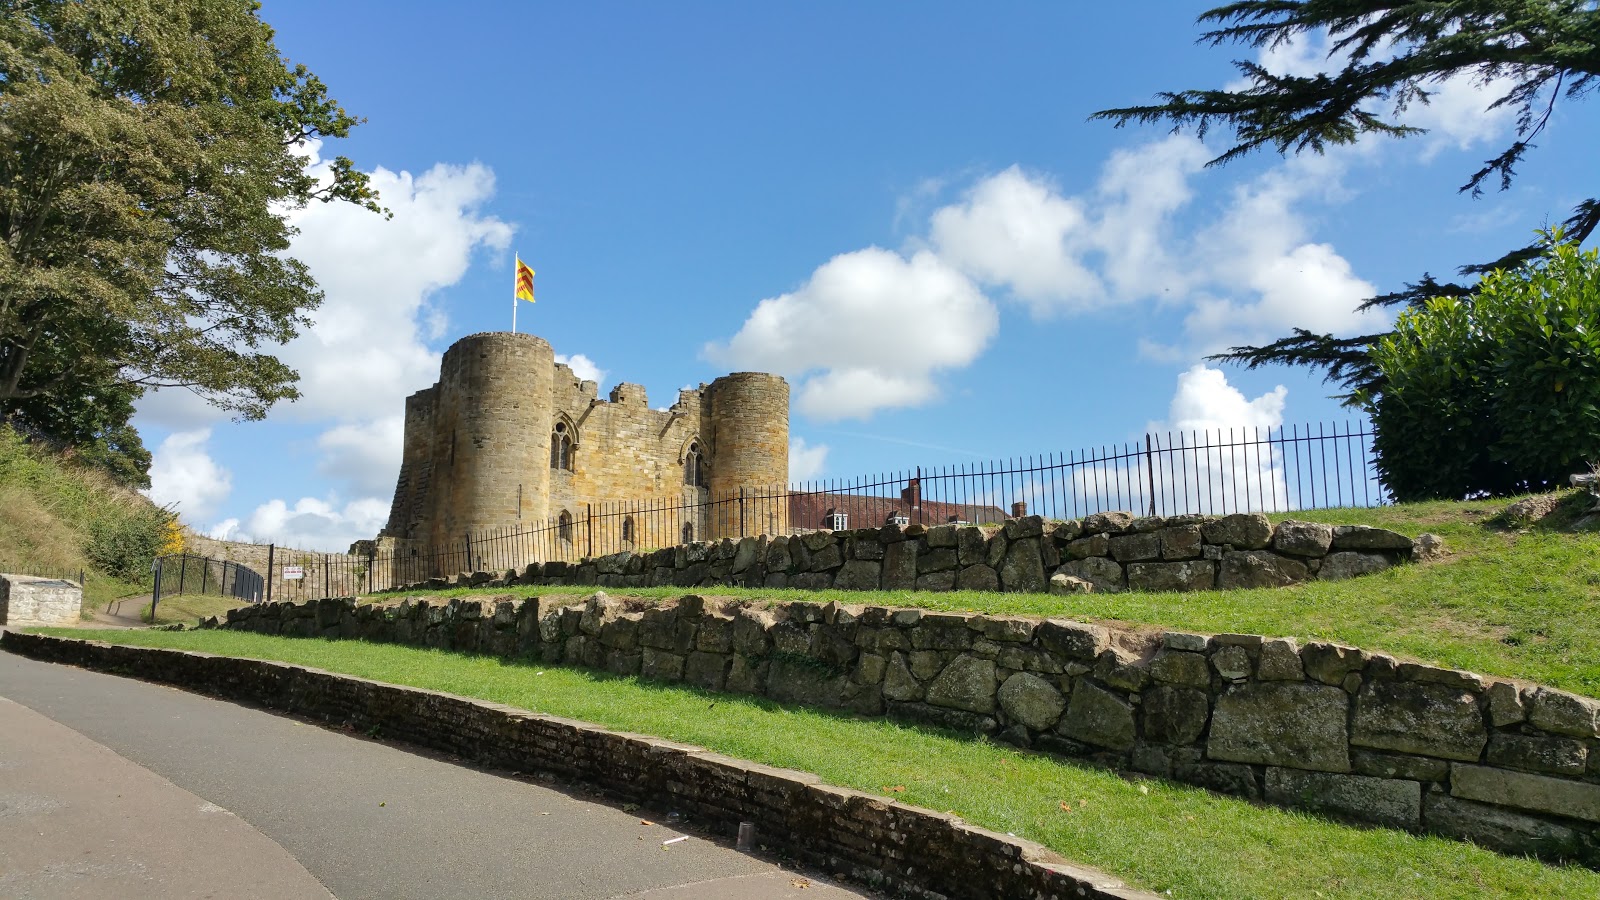 https://whatremovals.co.uk/wp-content/uploads/2022/02/Tonbridge Castle-300x169.jpeg